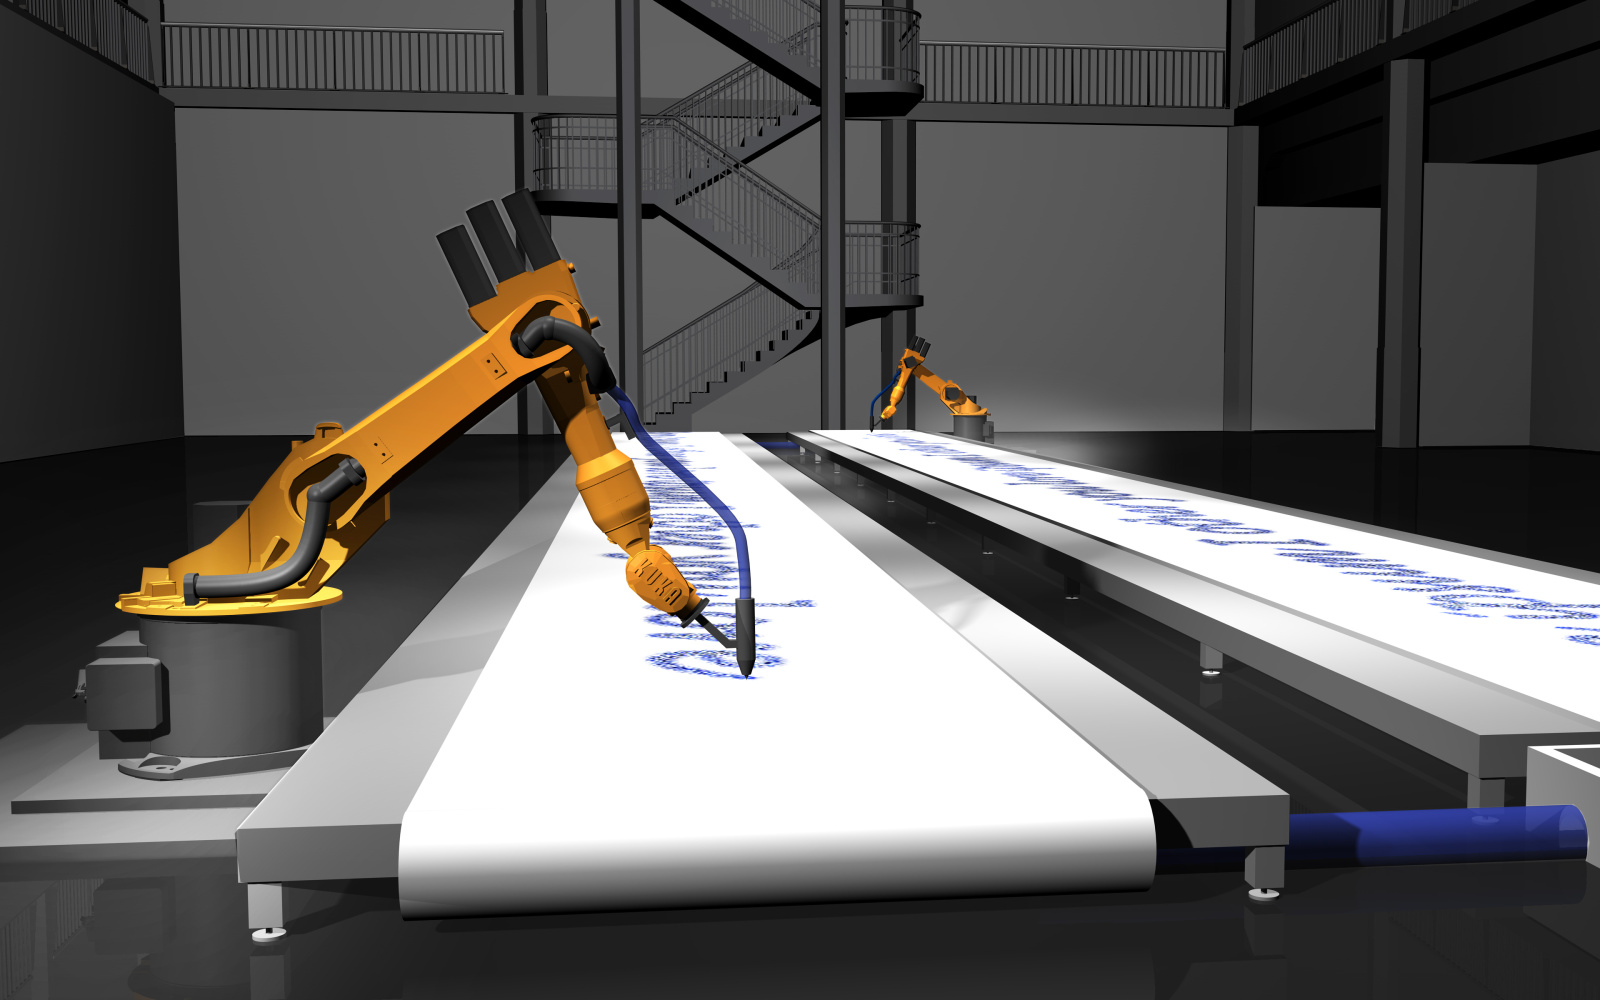 KUKA robots describe a paper conveyor belt.